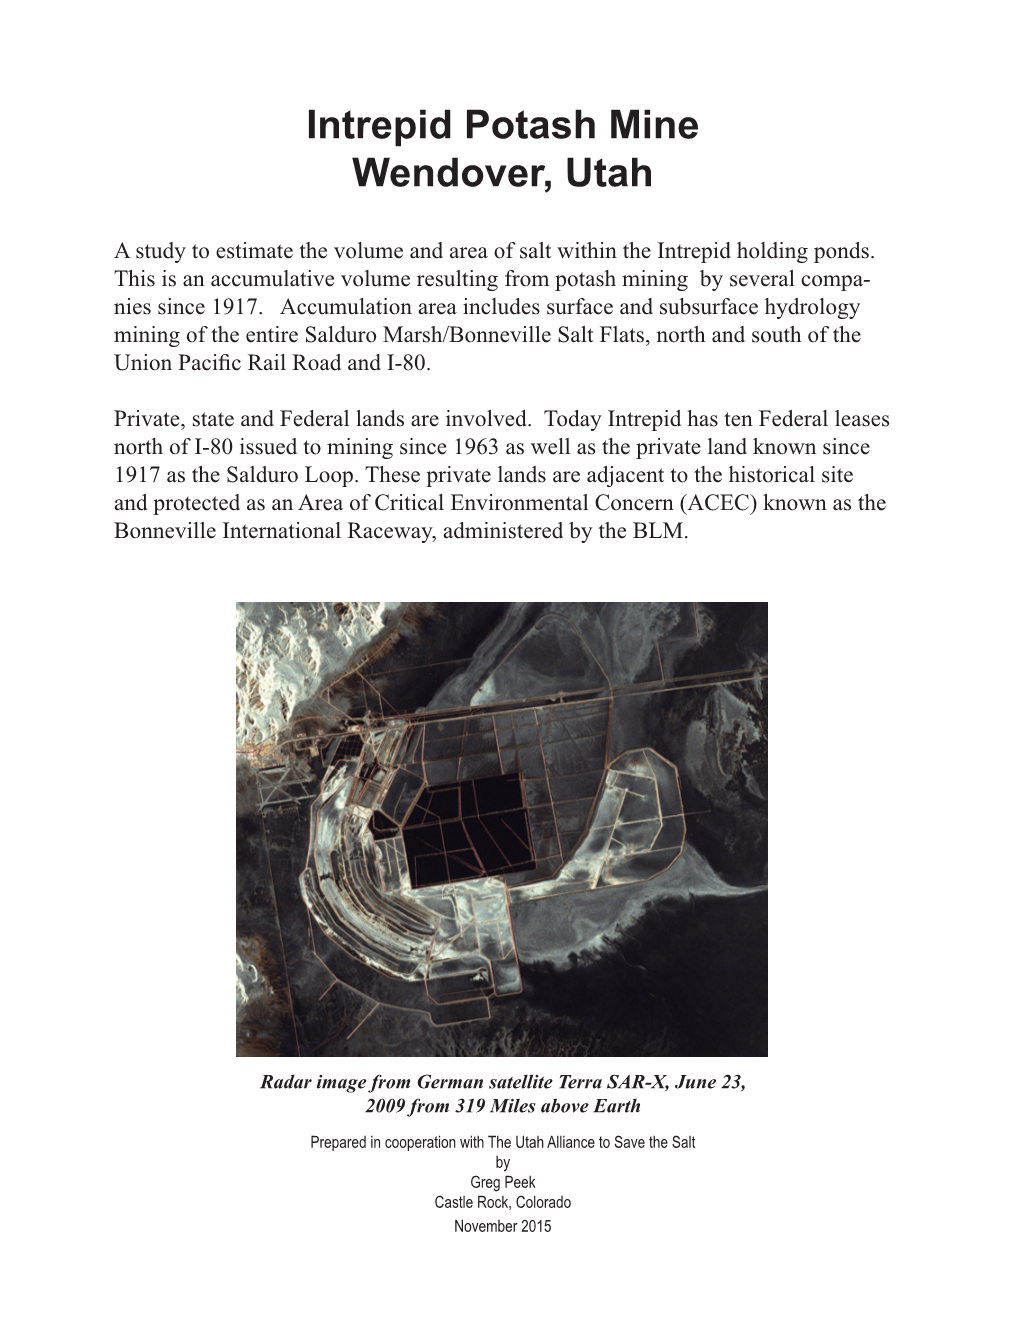 Intrepid Potash Mine Wendover, Utah